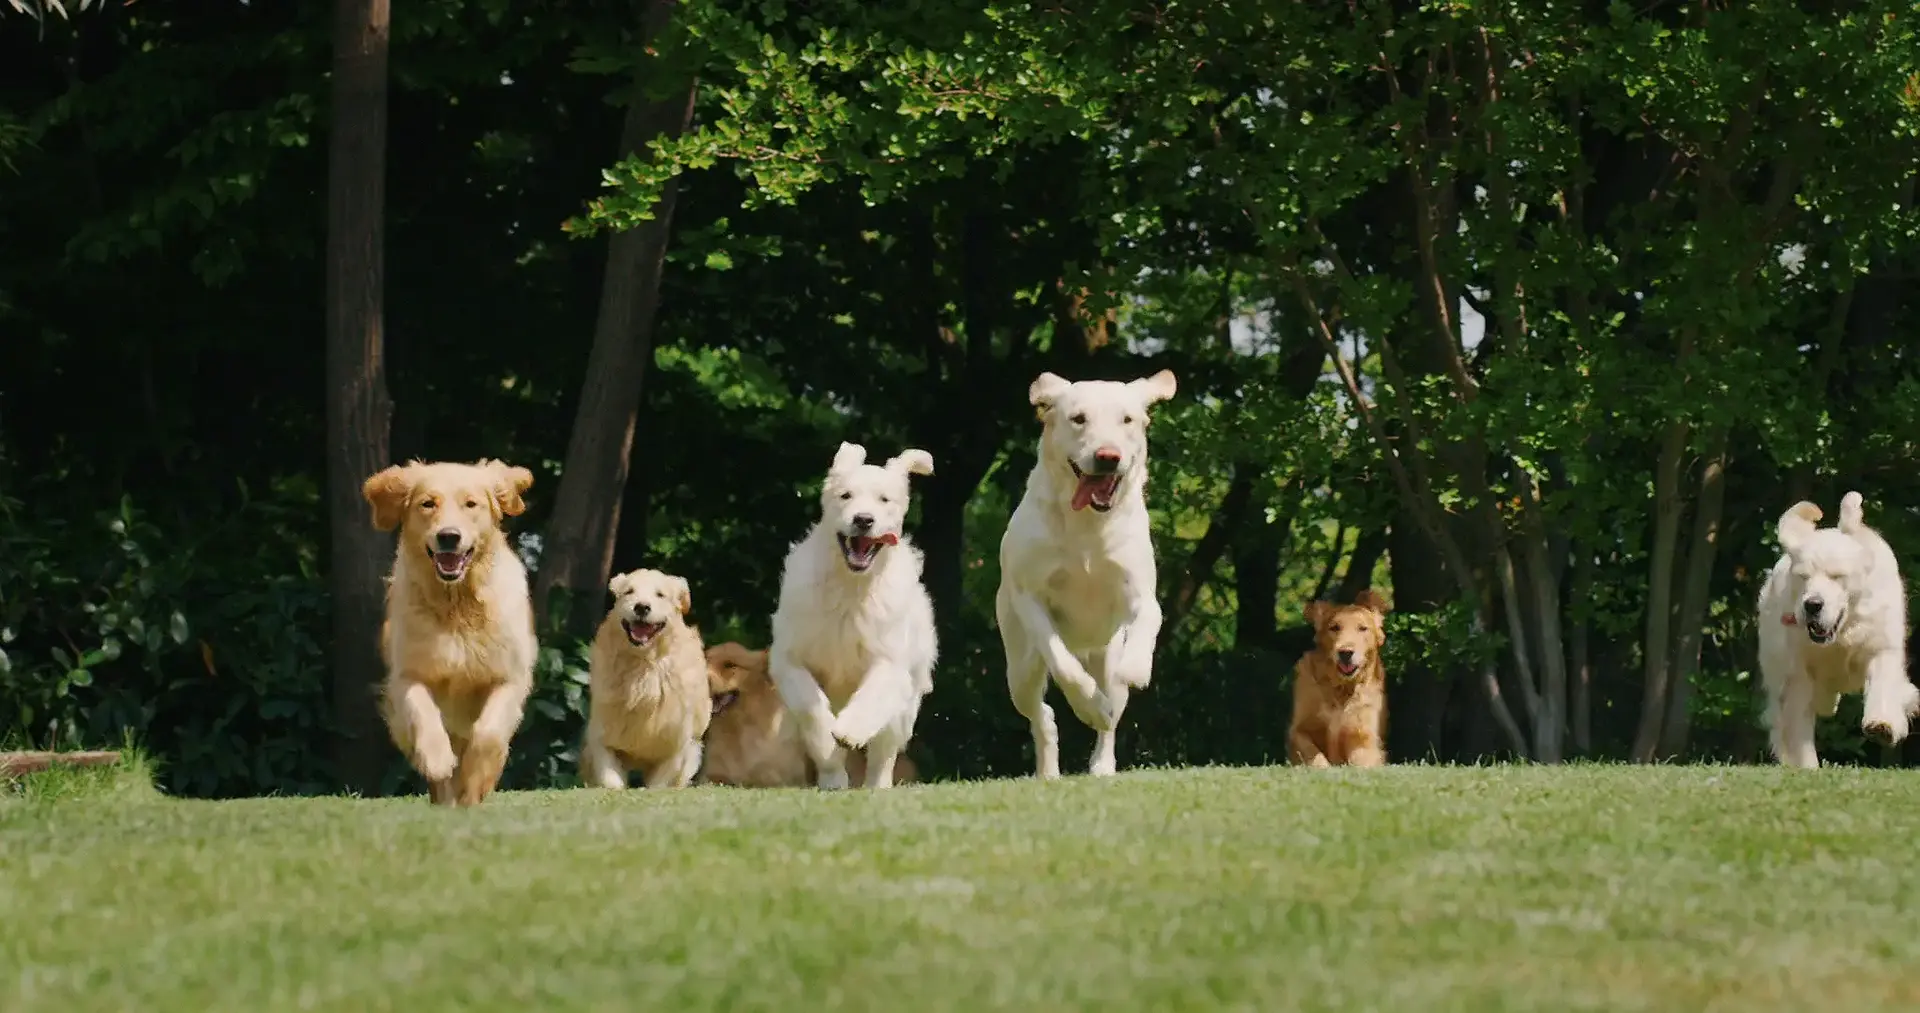 A group of Golden Retriever dogs running in an open field